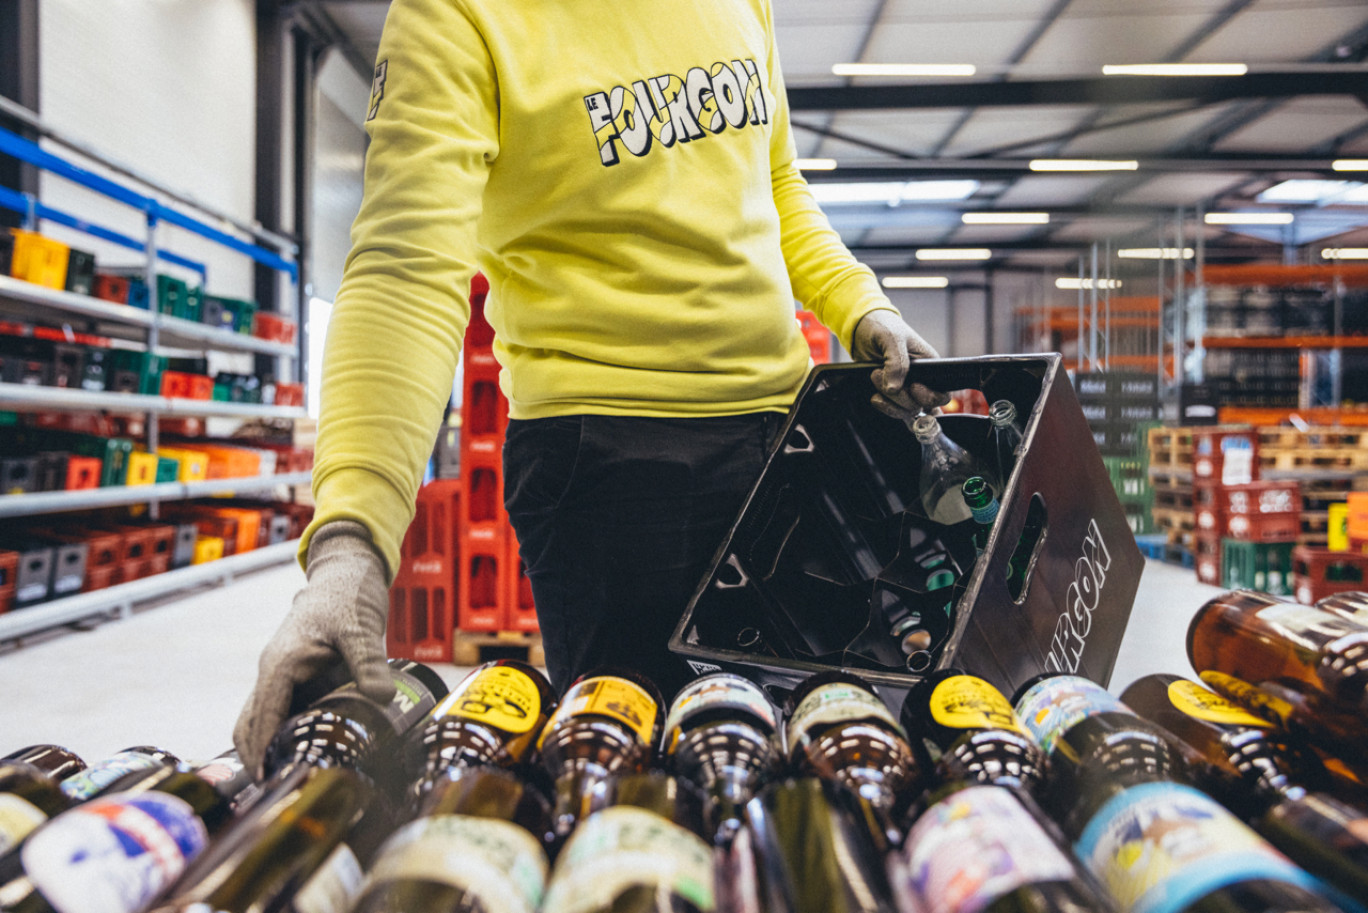 250 références et 300 000 bouteilles en 2021 : le Fourgon trace sa route sur le marché des boissons consignées. © Le Fourgon